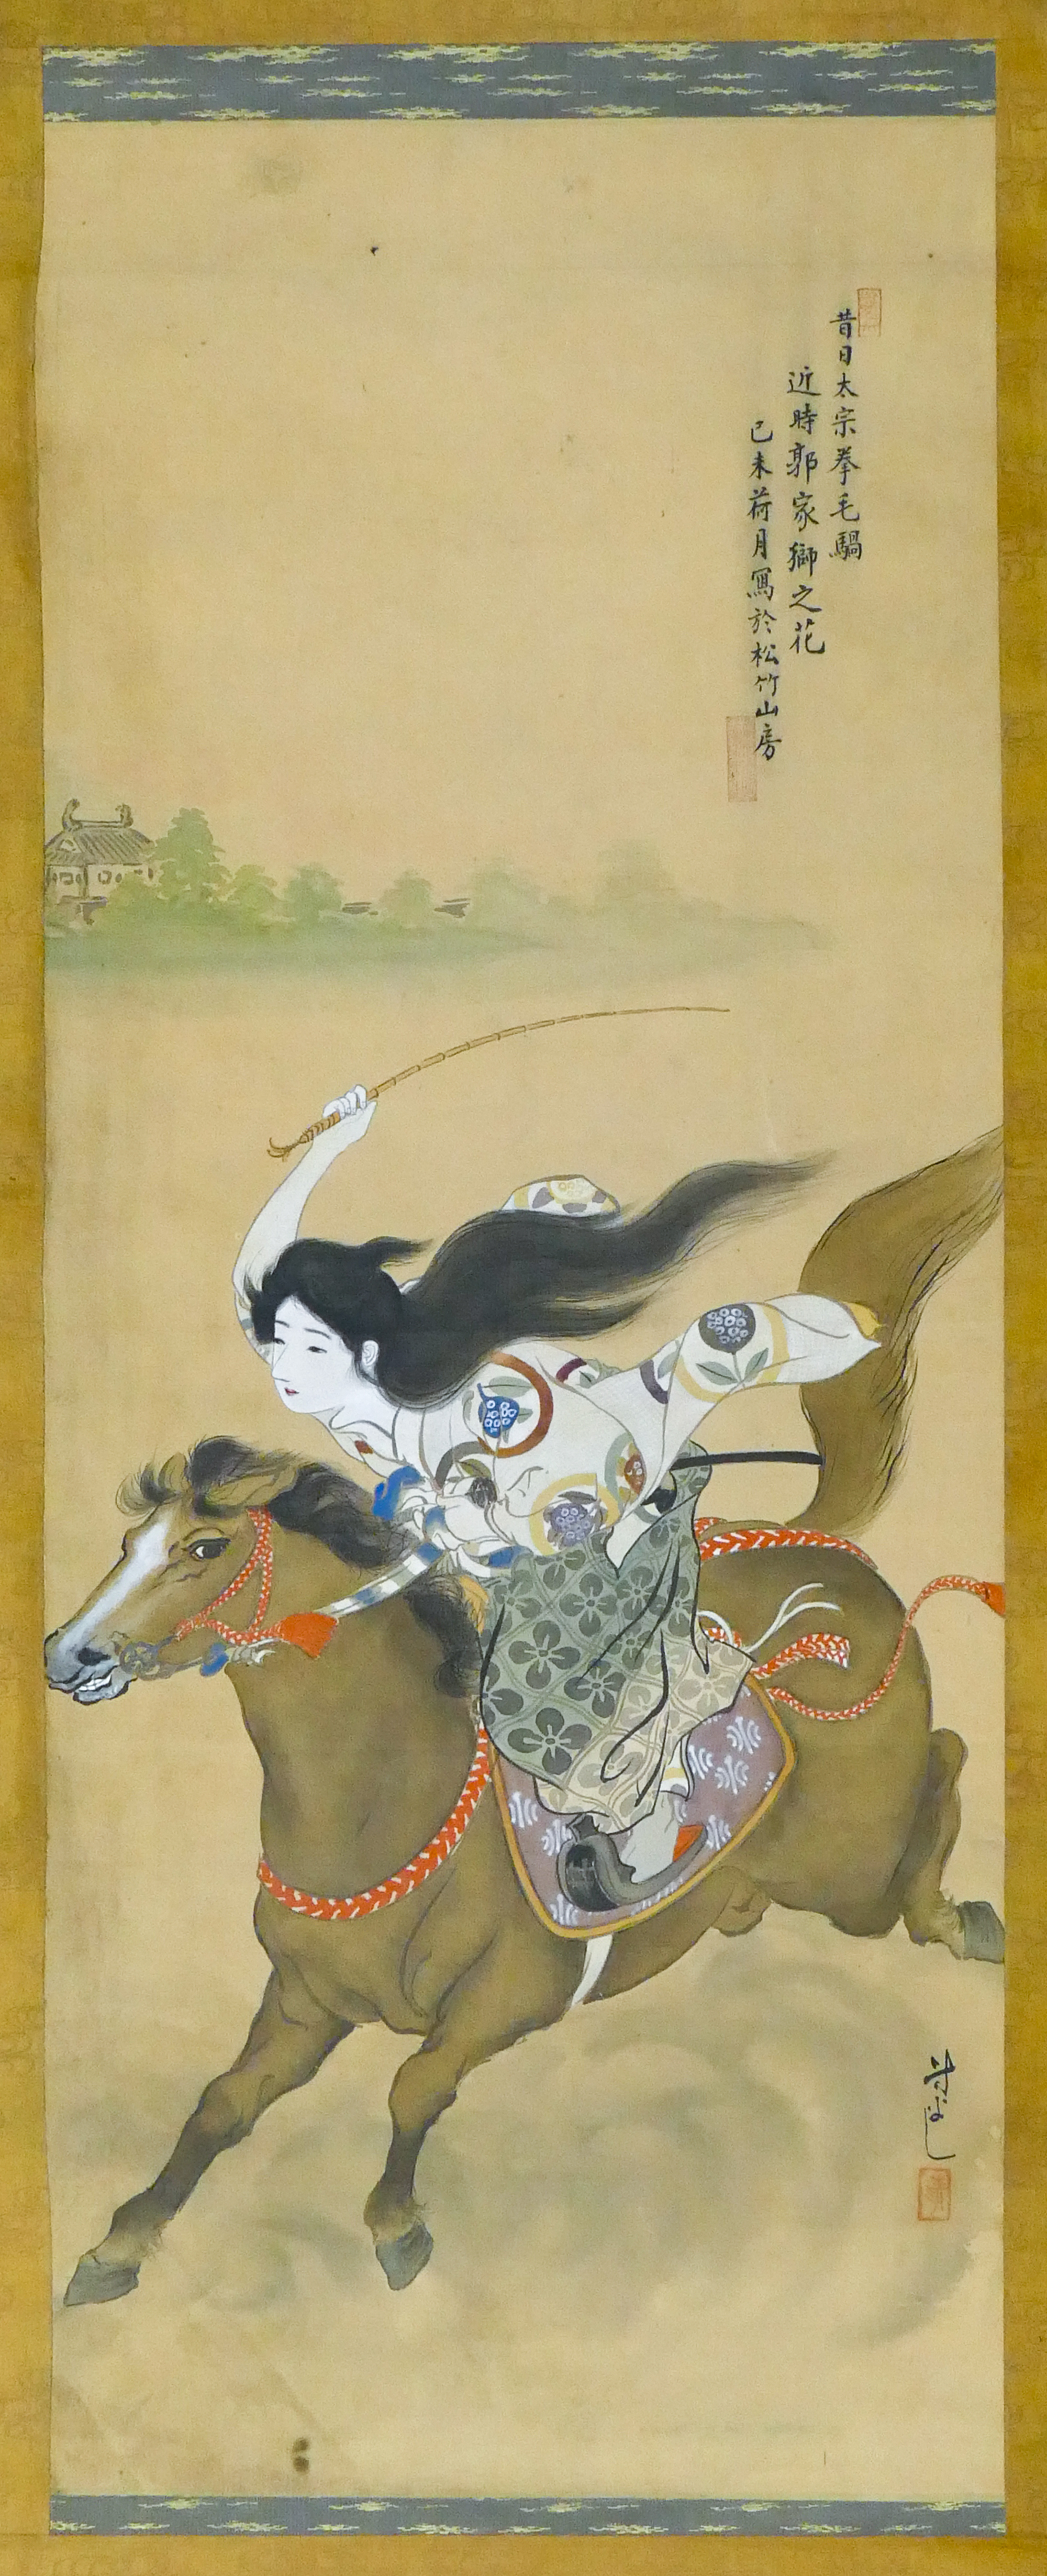 Old Japanese Geisha Riding Horse 3cfbbf